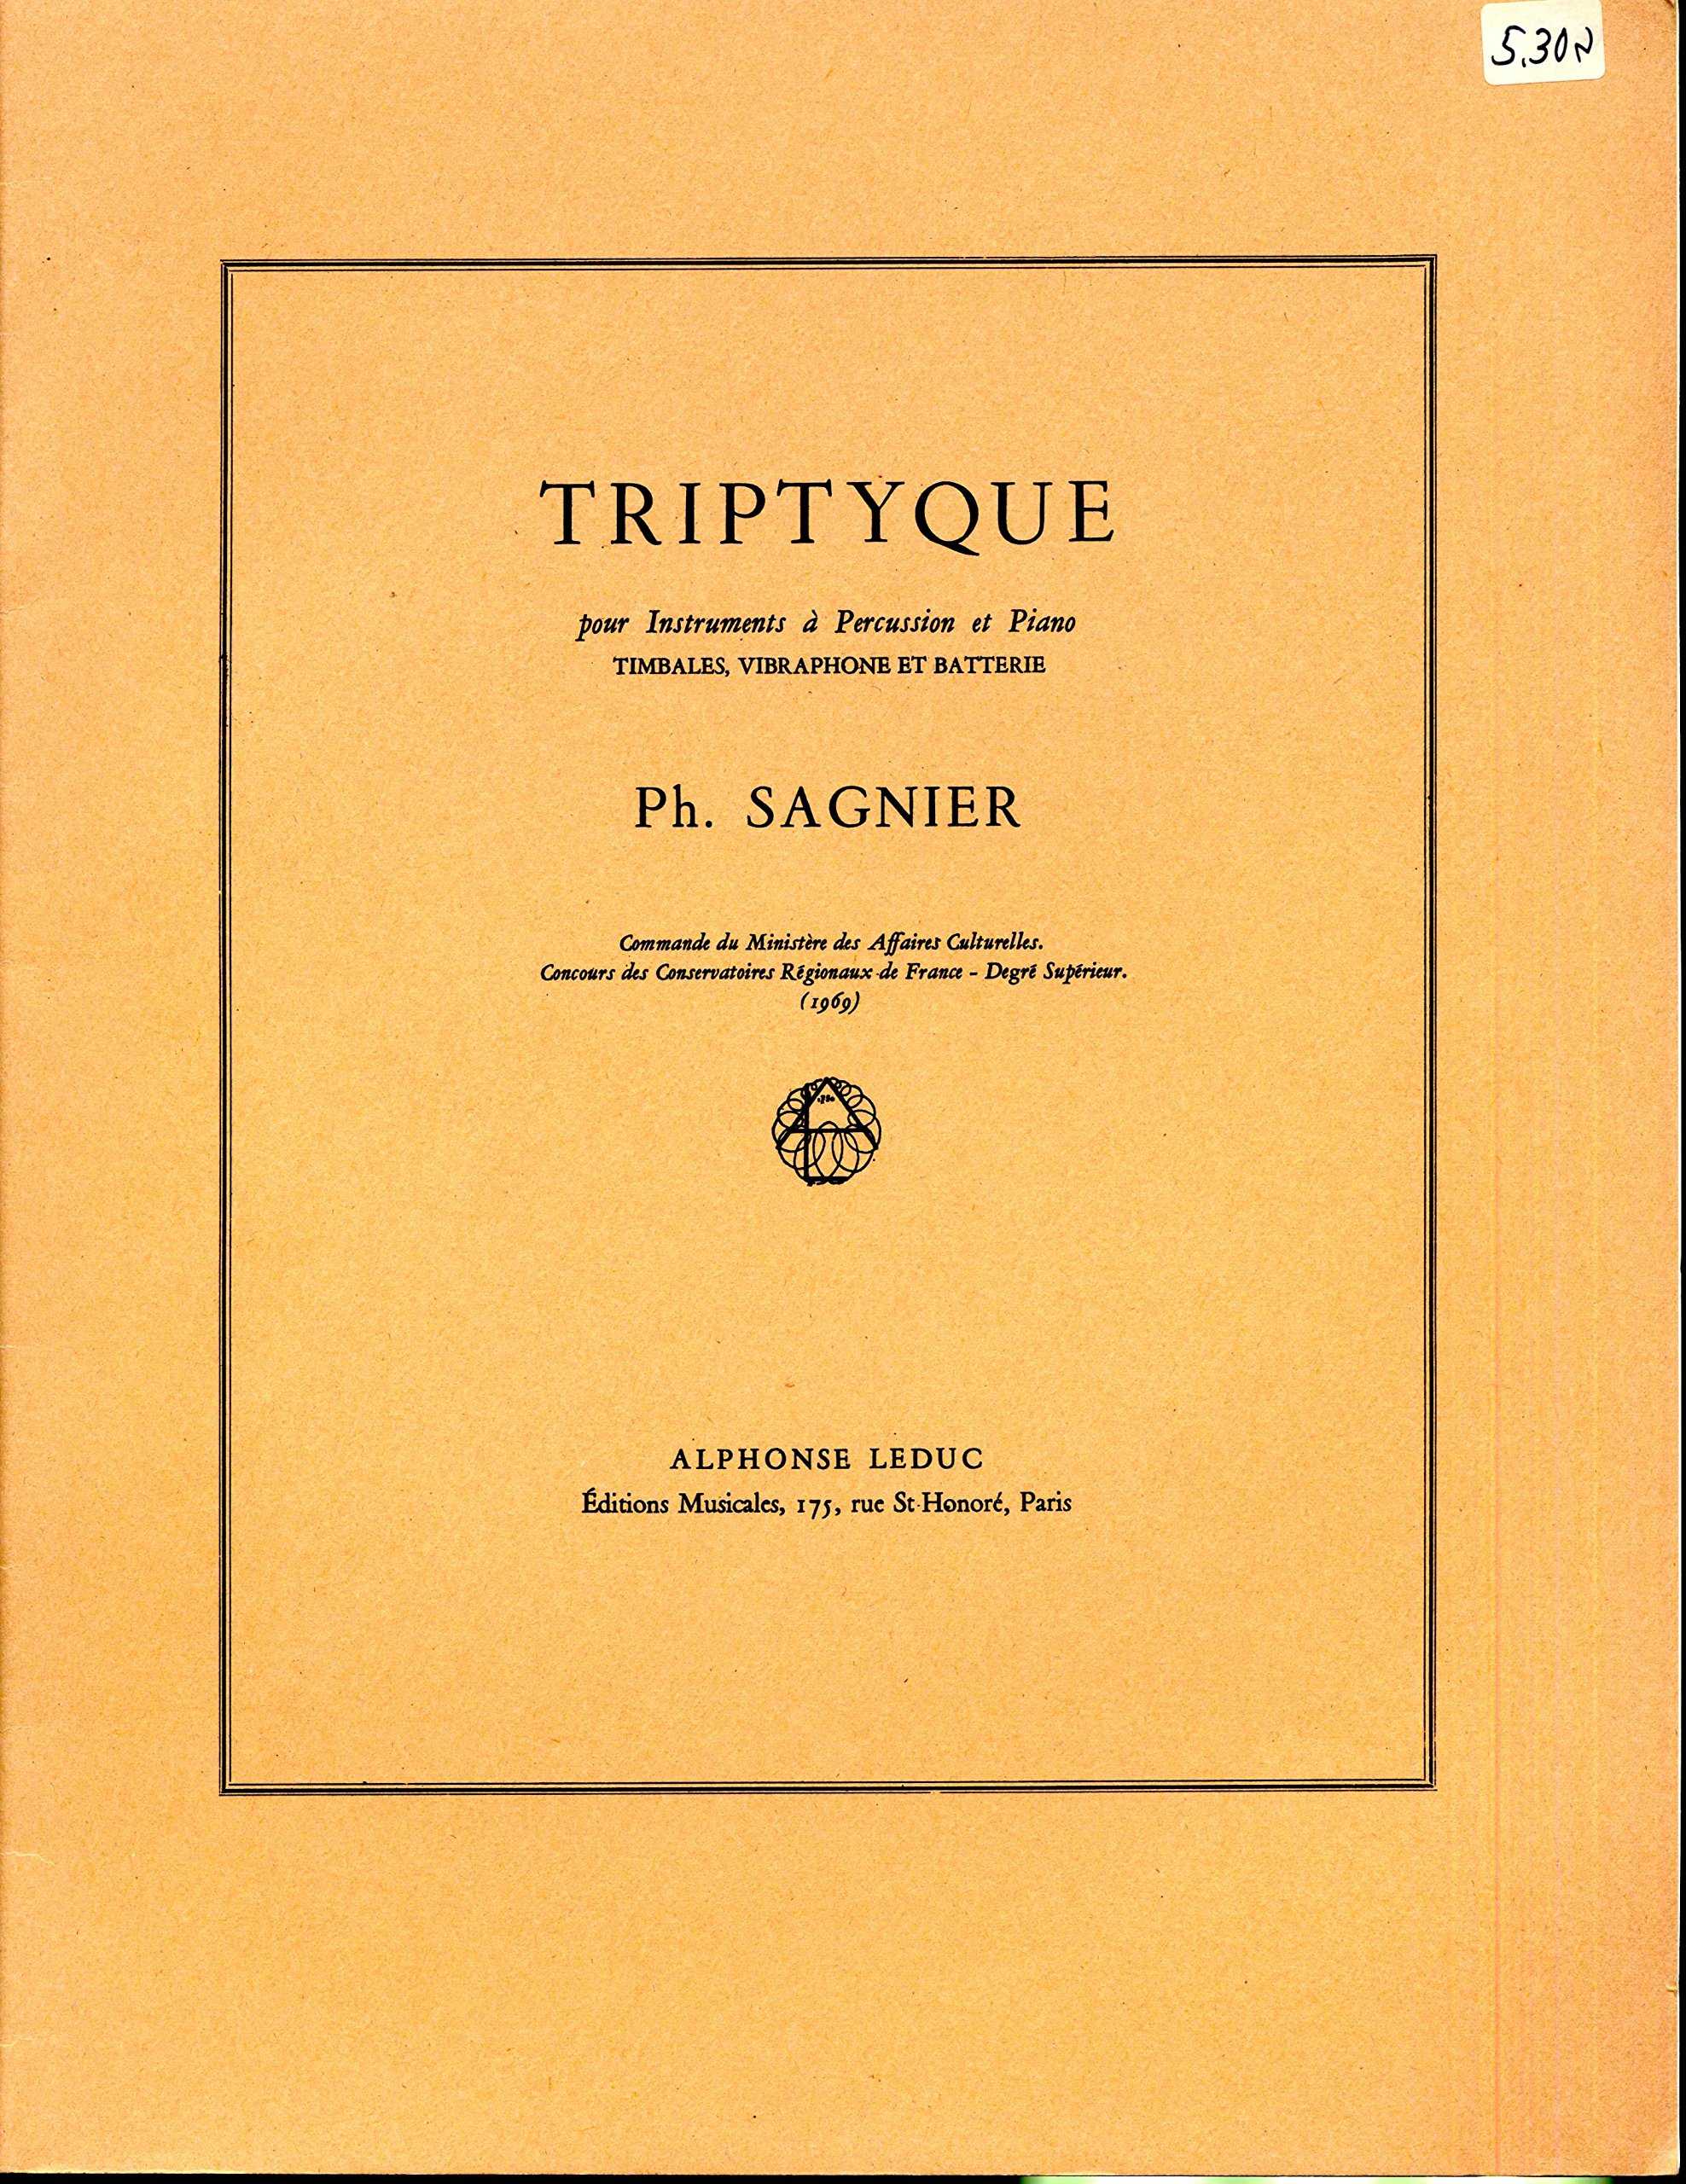 Triptyque by Philippe Sagnier